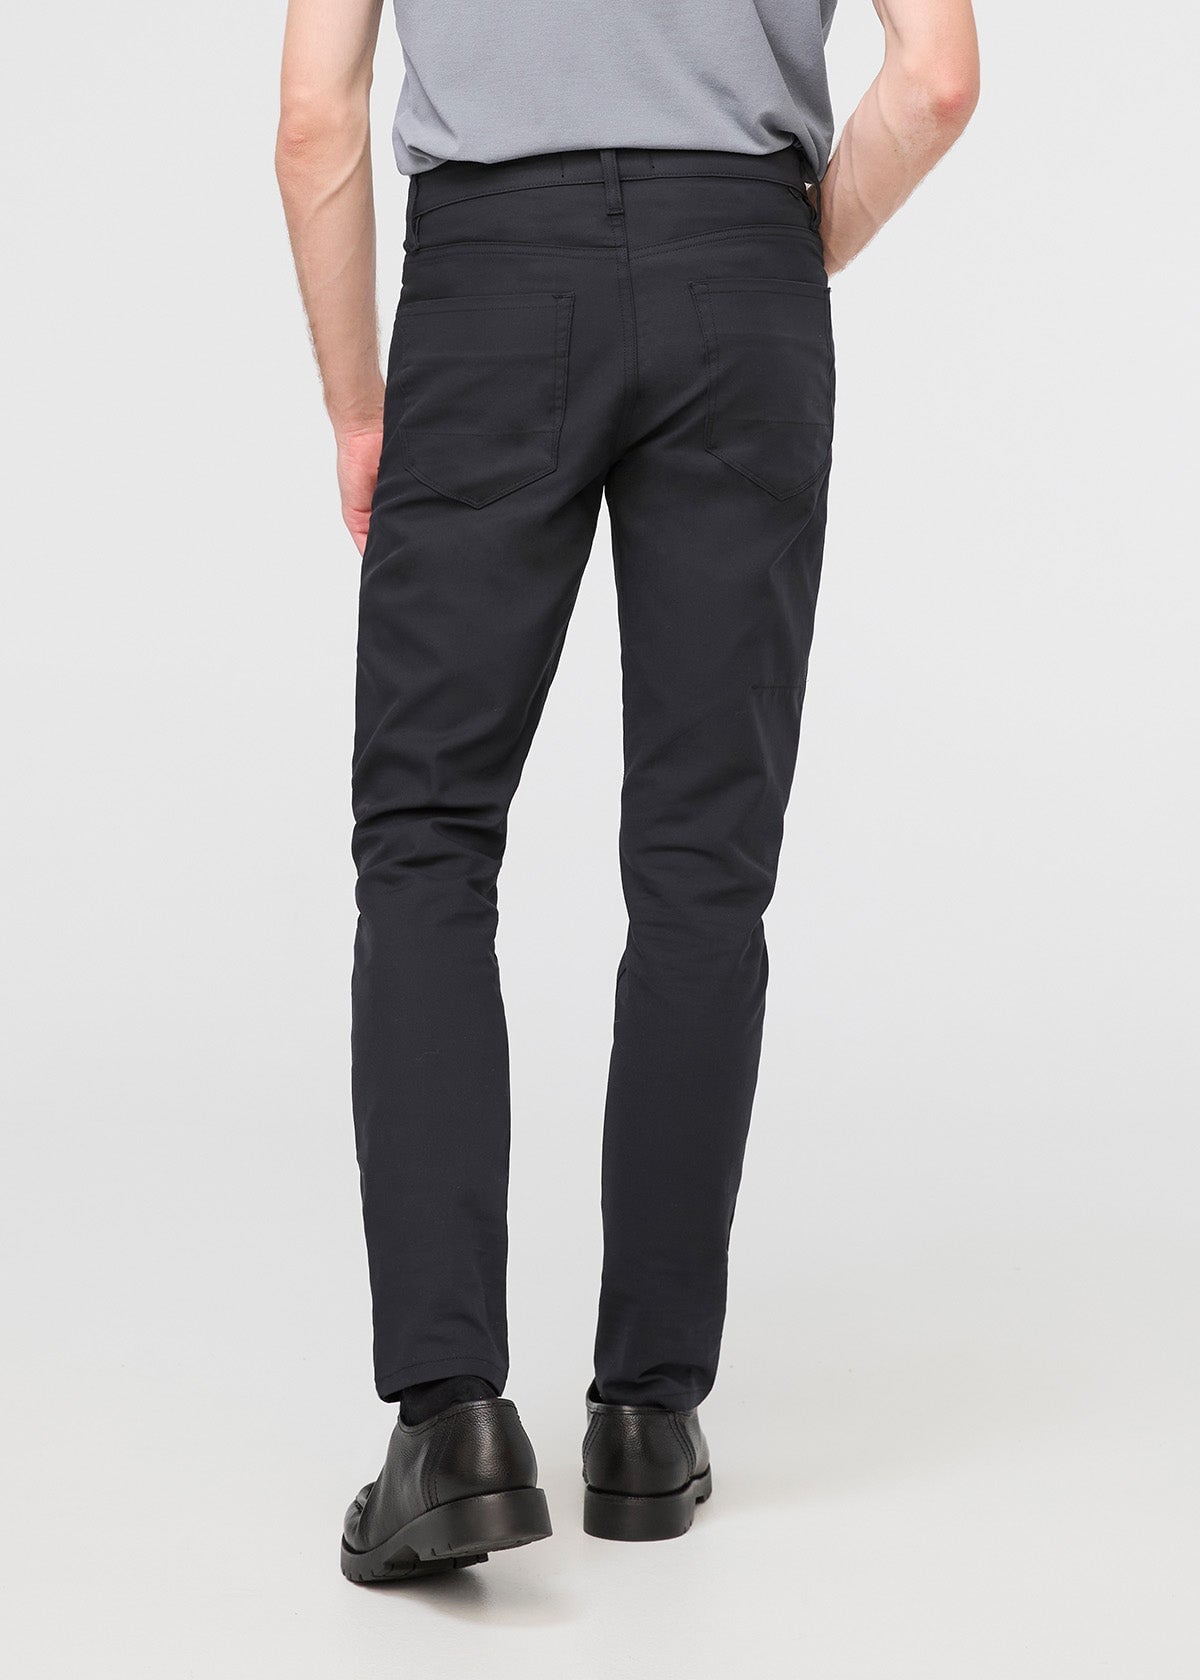 ASOS DESIGN slim suit pants in black | ASOS